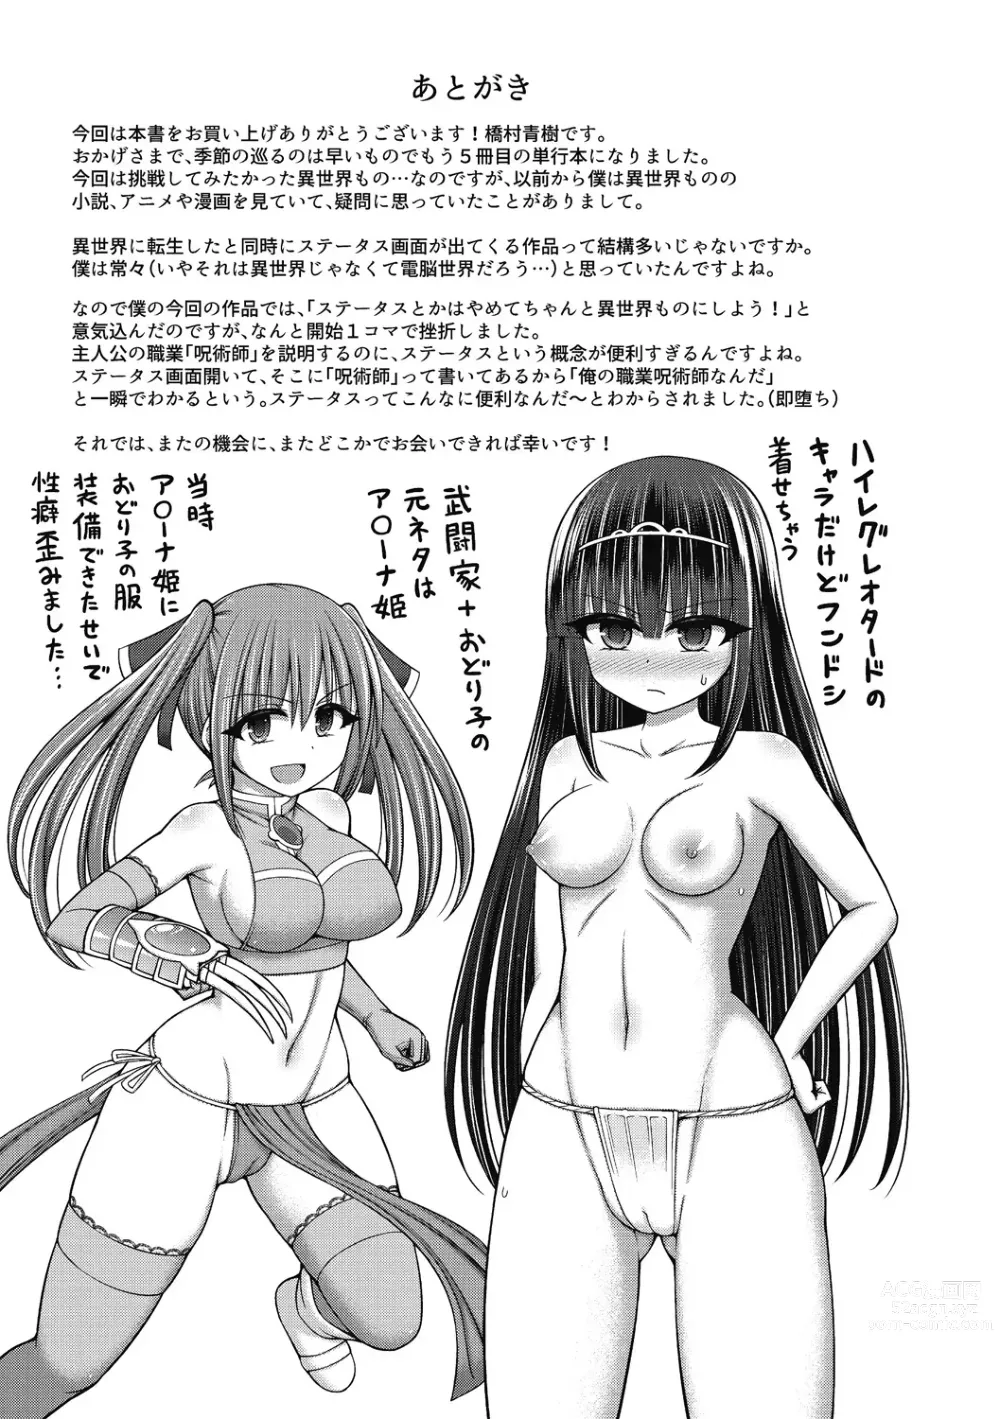 Page 203 of manga Jujutsushi ni Tensei Shita node Koujo Zenin Dorei ni Shite Mita